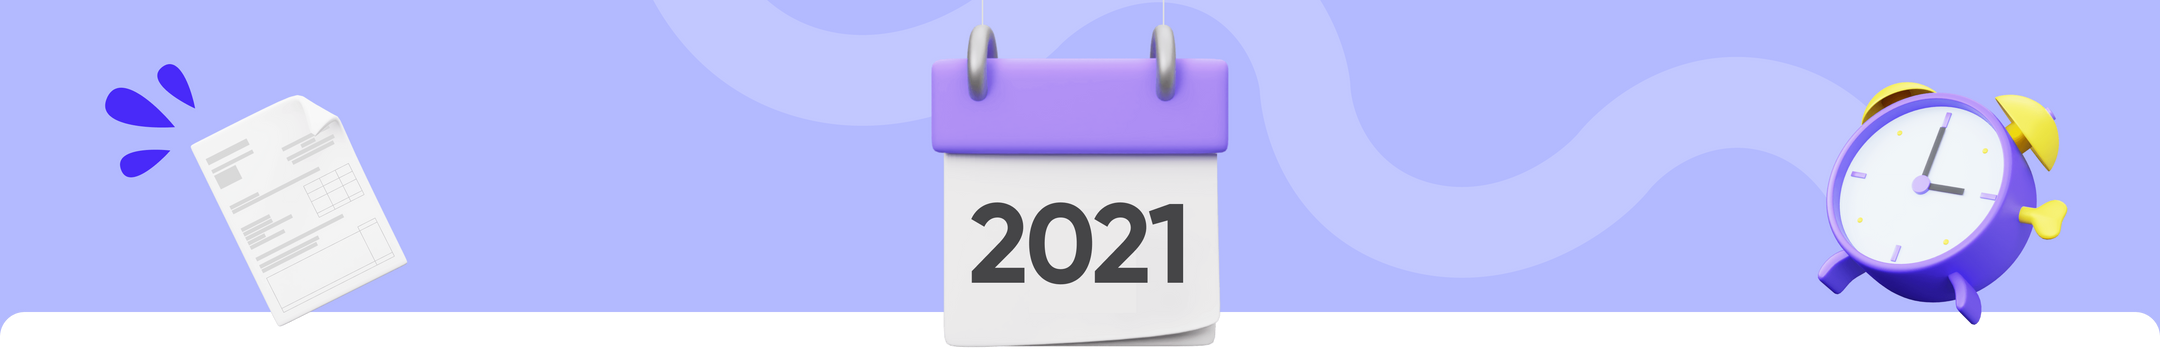 Steuererklärung 2021: Die Fristen zur Abgabe und alle weiteren Infos!